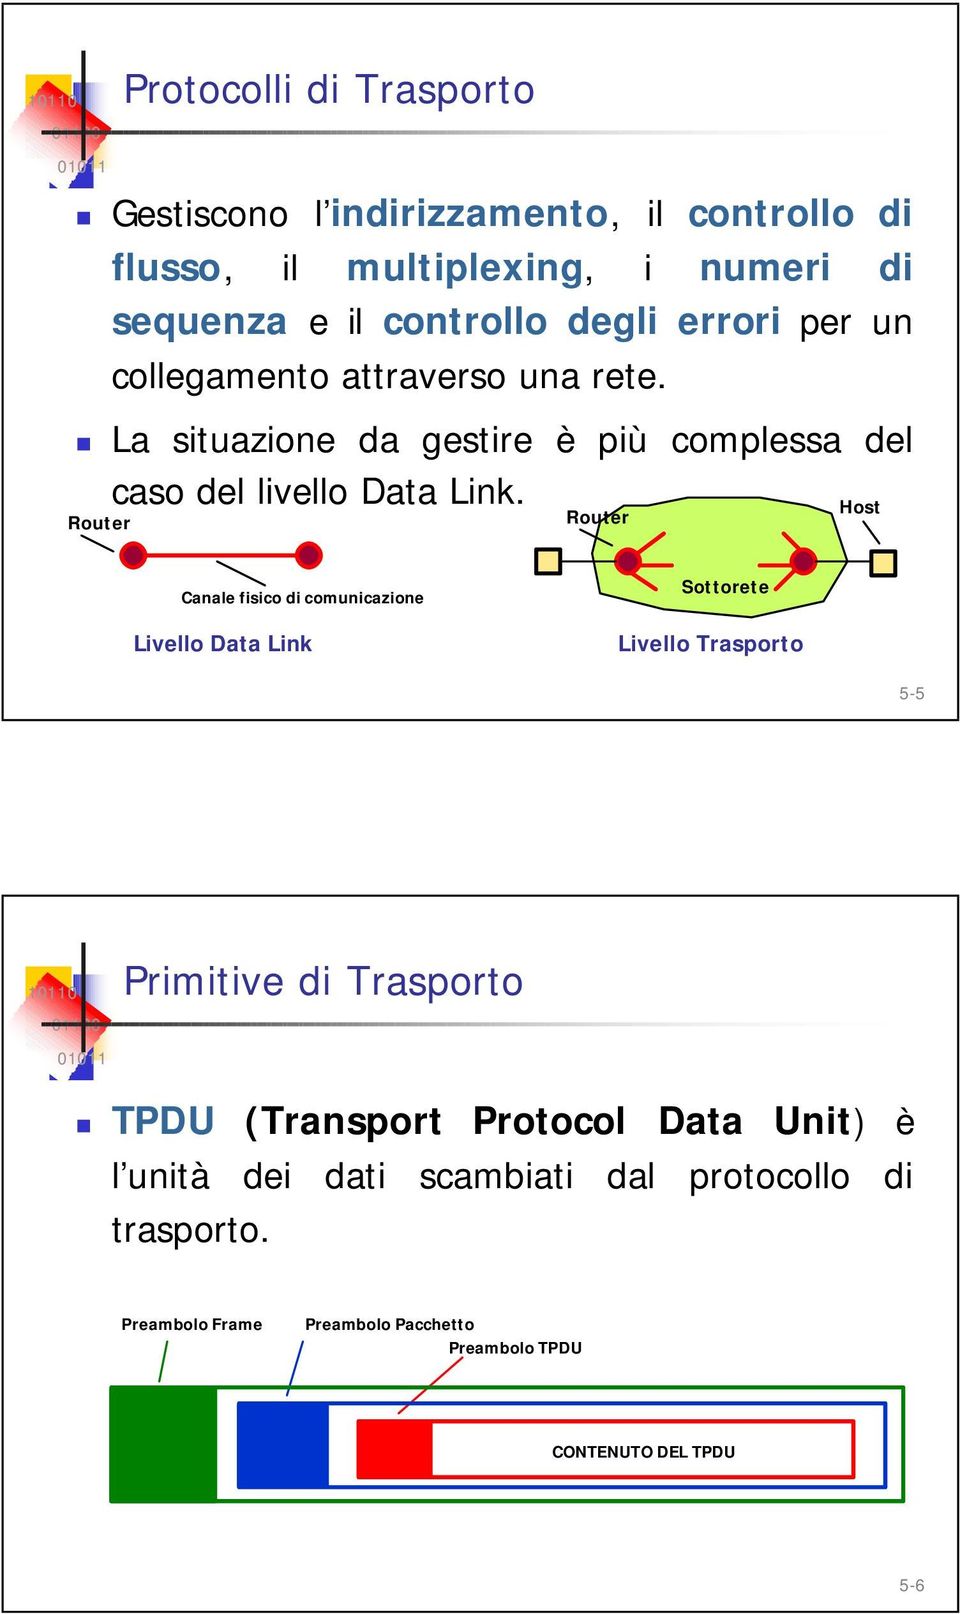 Host Router Router Canale fisico di comunicazione Livello Data Link Sottorete Livello Trasporto 5-5 Primitive di Trasporto TPDU